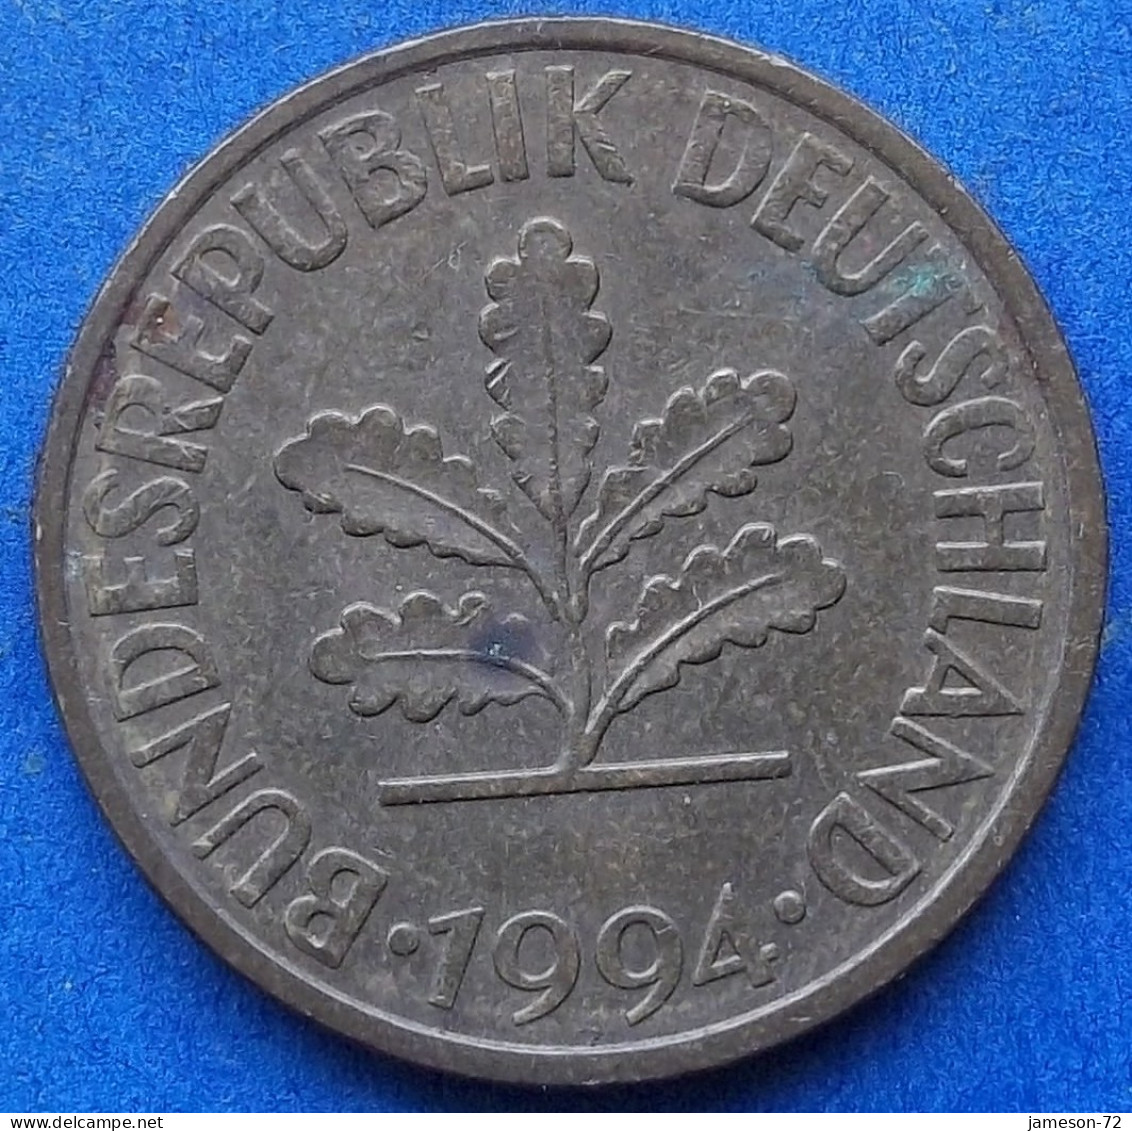 GERMANY - 10 Pfennig 1994 D KM# 108 Federal Republic Mark Coinage (1946-2002) - Edelweiss Coins - 10 Pfennig